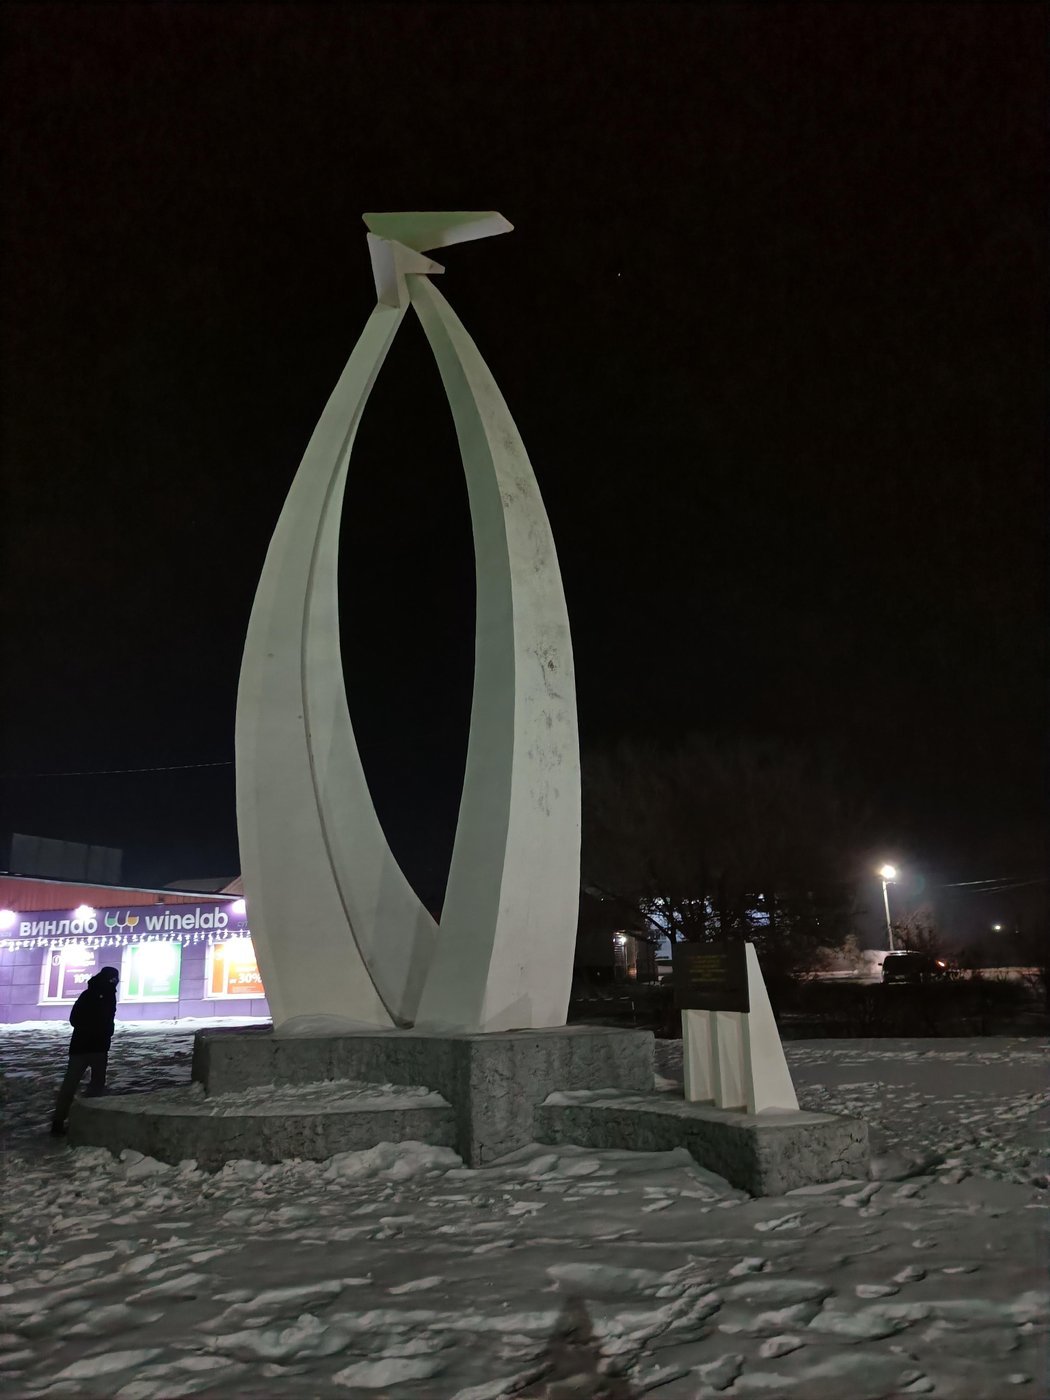 25 декабря 2002 года на станции Ружино завершилась электрификация Транссиба, и в честь самоотверженного труда Российских строителей и железнодорожников, завершивших электрификацию Великой Транссибирской магистрали, здесь стоит монумент